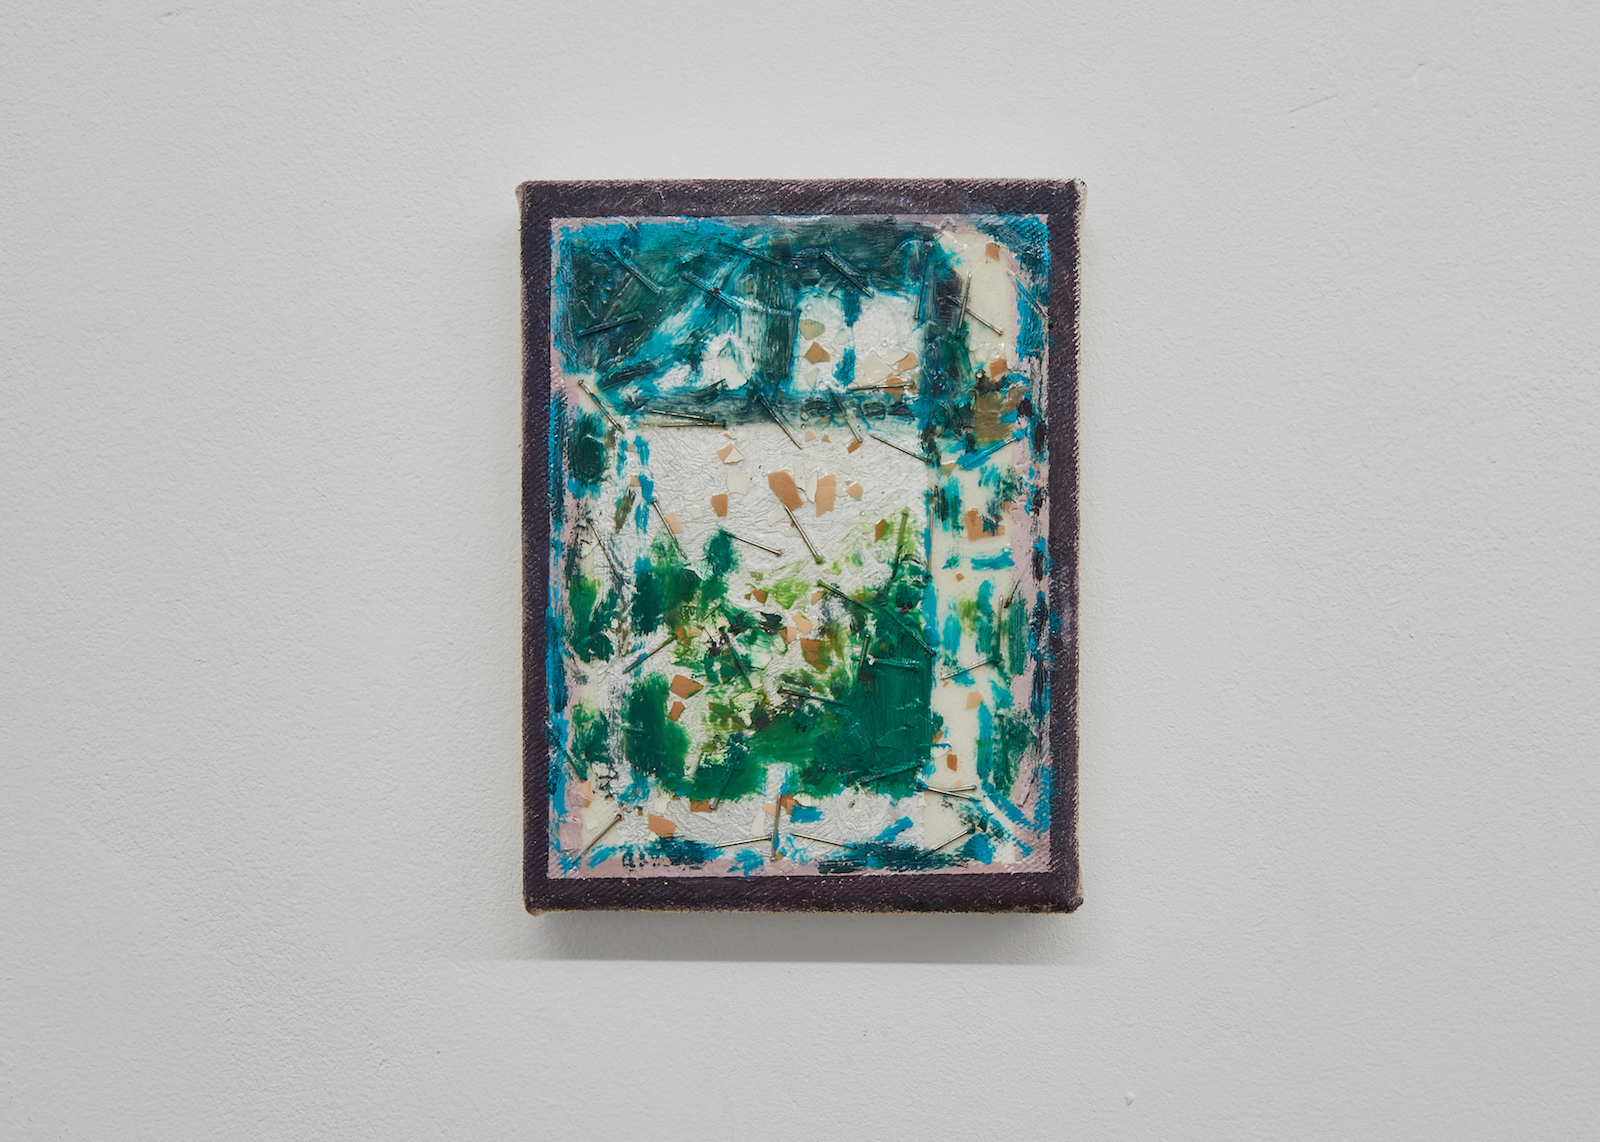 Cosima zu Knyphausen, Aussicht aus einem Fenster, 2020, Aluminium, eggshells, nails and oil on canvas, 19 x 15 cm